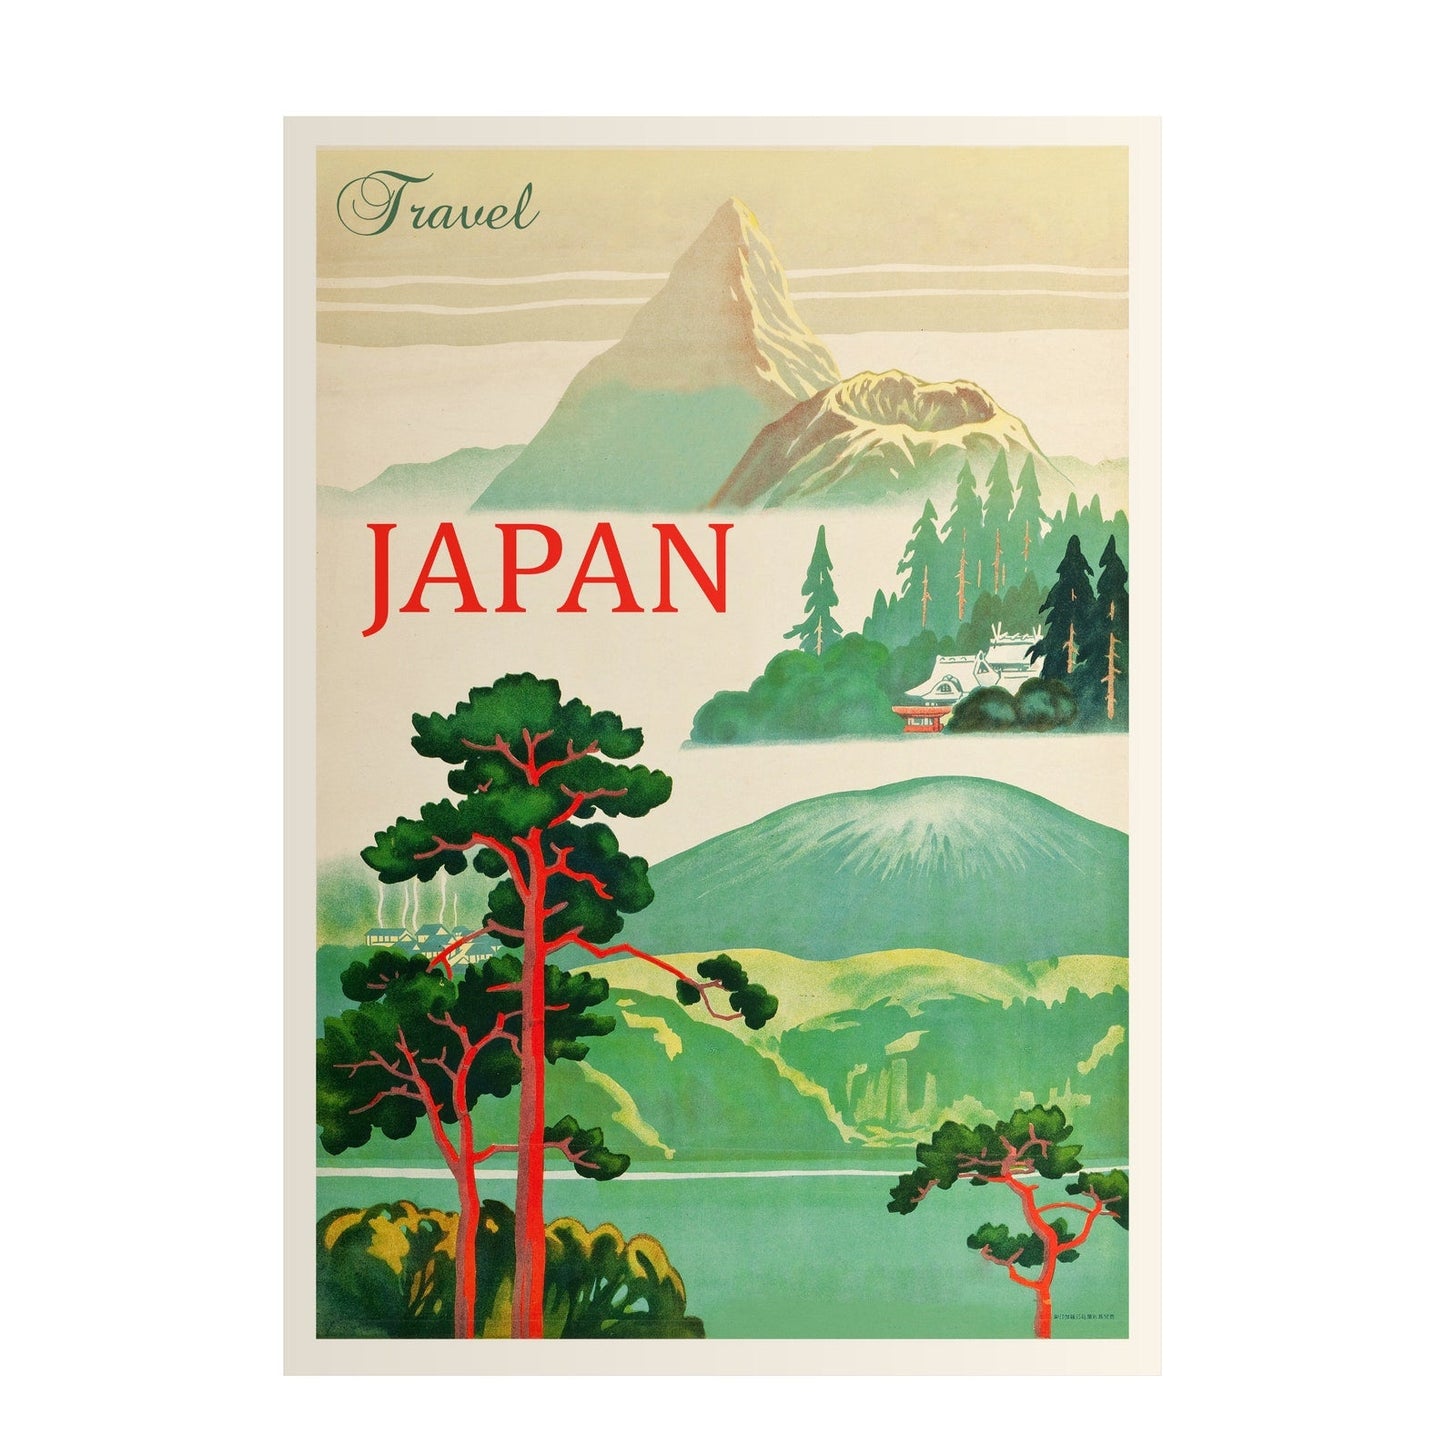 Visiter le Japon - Affiche de voyage vintage